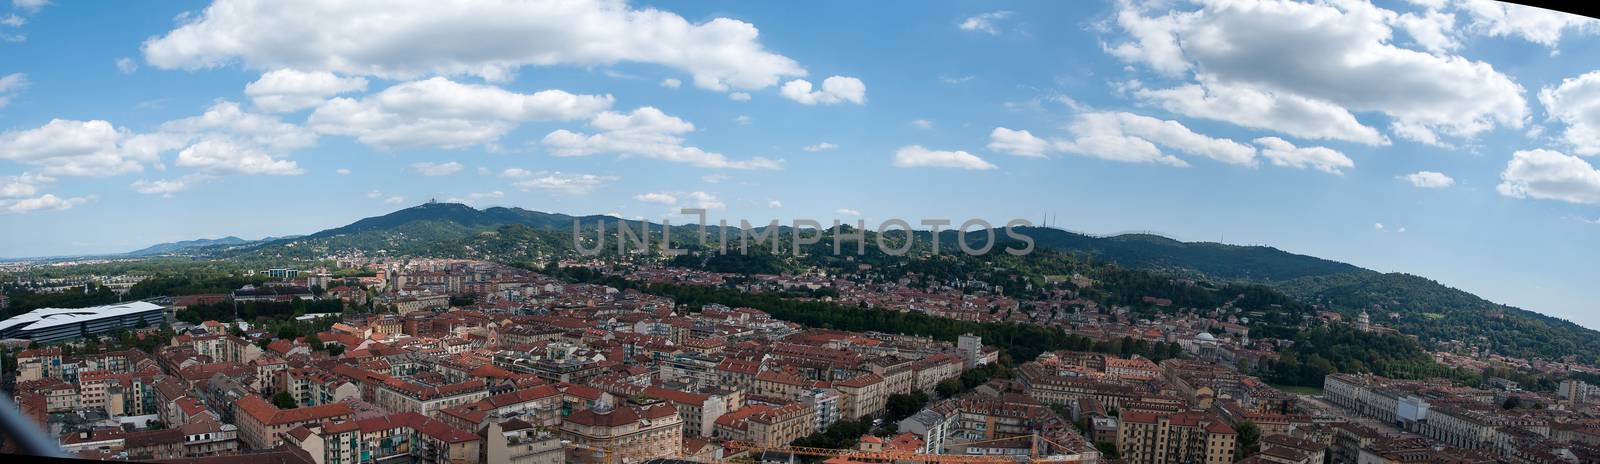 Turin panorama by javax